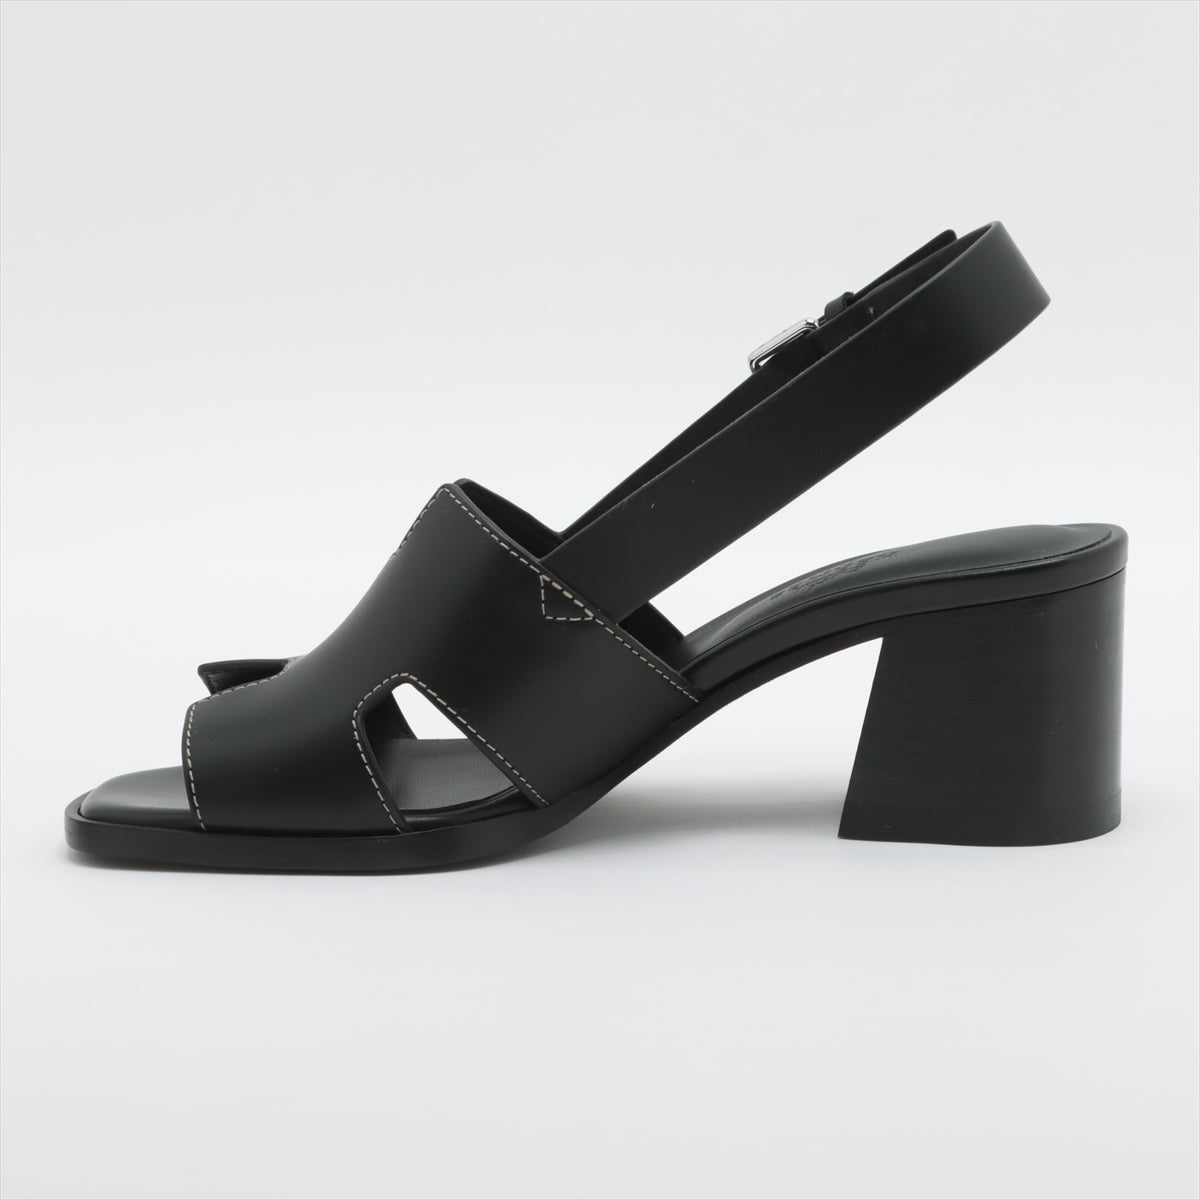 Hermès Elbe Leather Sandals 36 Ladies' Black box There is a storage bag